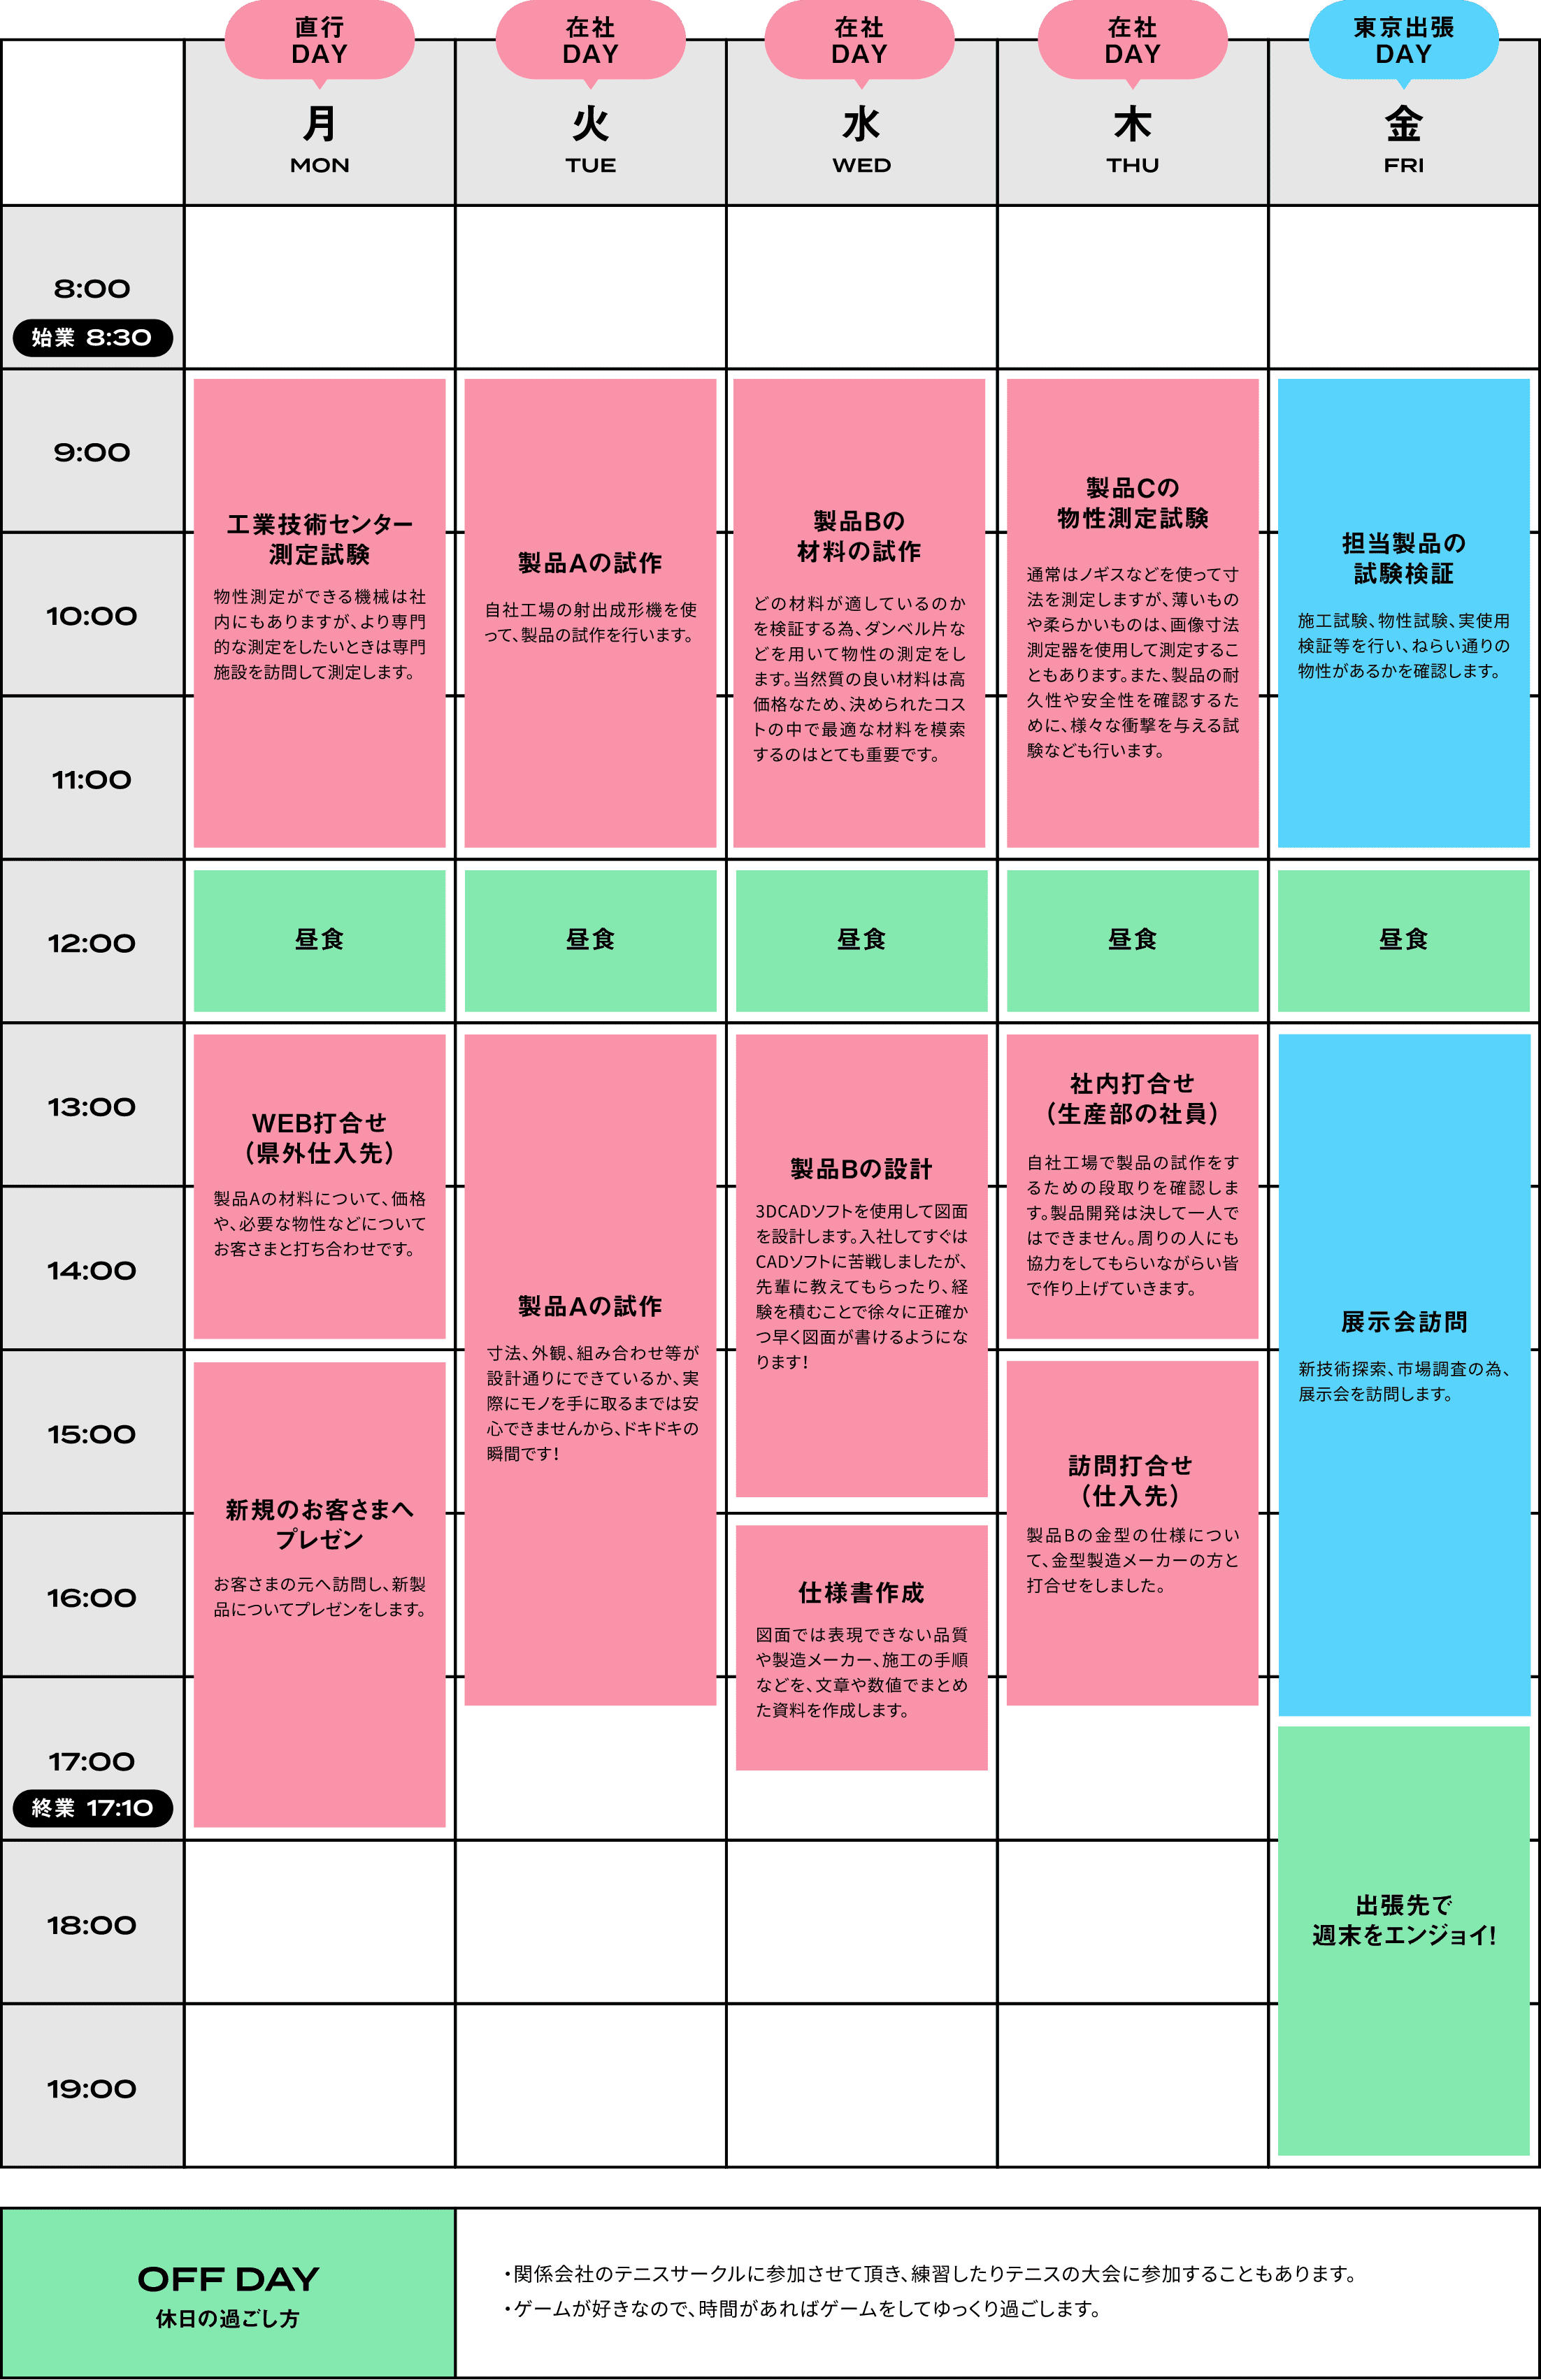 H.N.1 week schedule